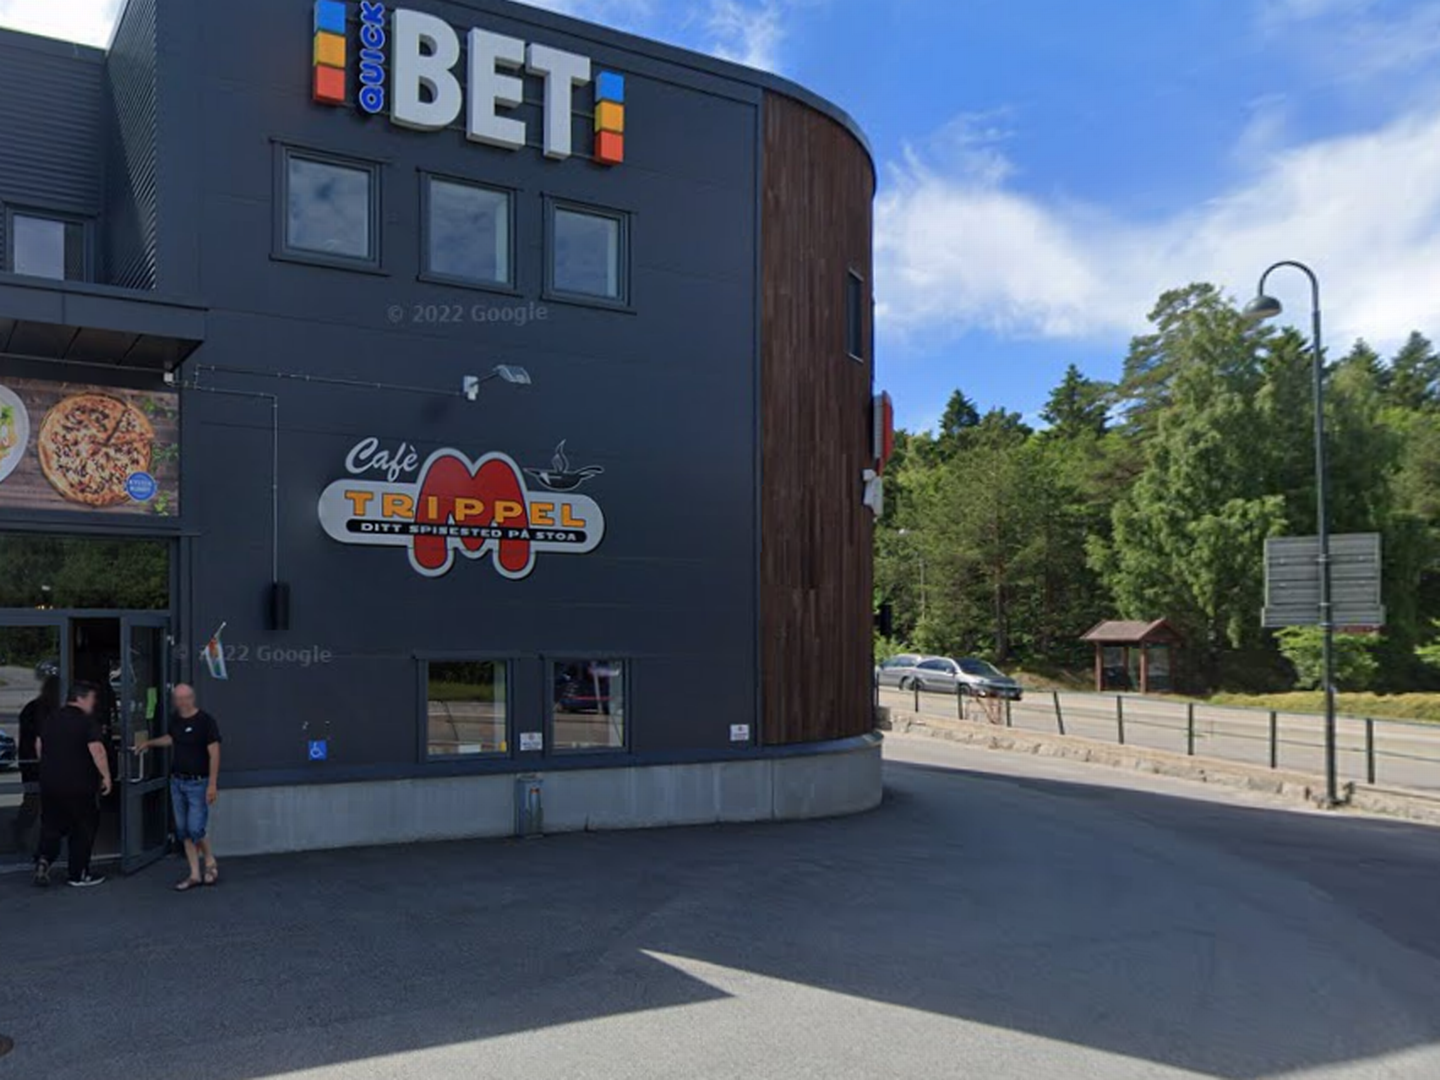 BUTIKKLOKALER: En ny butikk kommer inn i de gamle lokalene til Meny på Stoa i Åsbieveien 2 i Arendal. | Foto: Google Street View